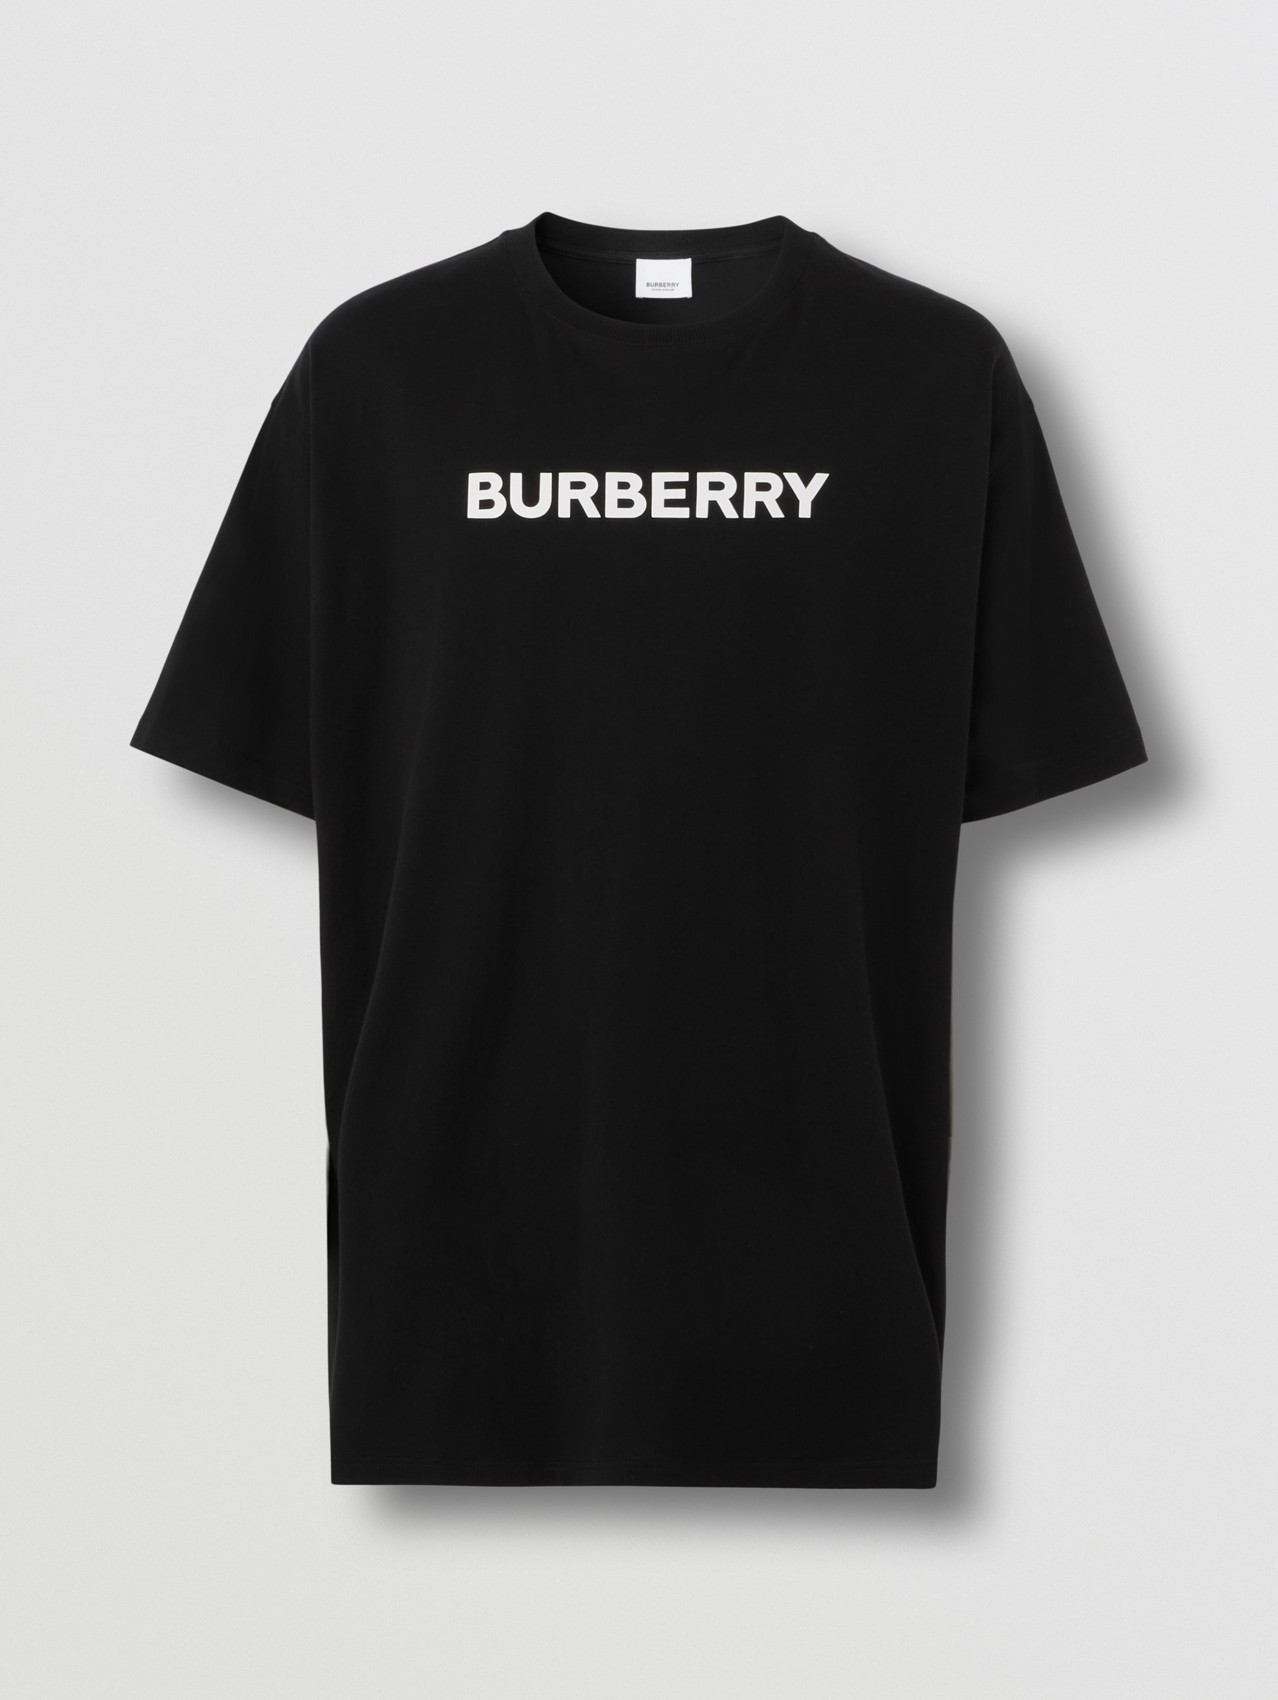 Burberry BURBERRYCamiseta Polo hombre Burberry 2021/2022 